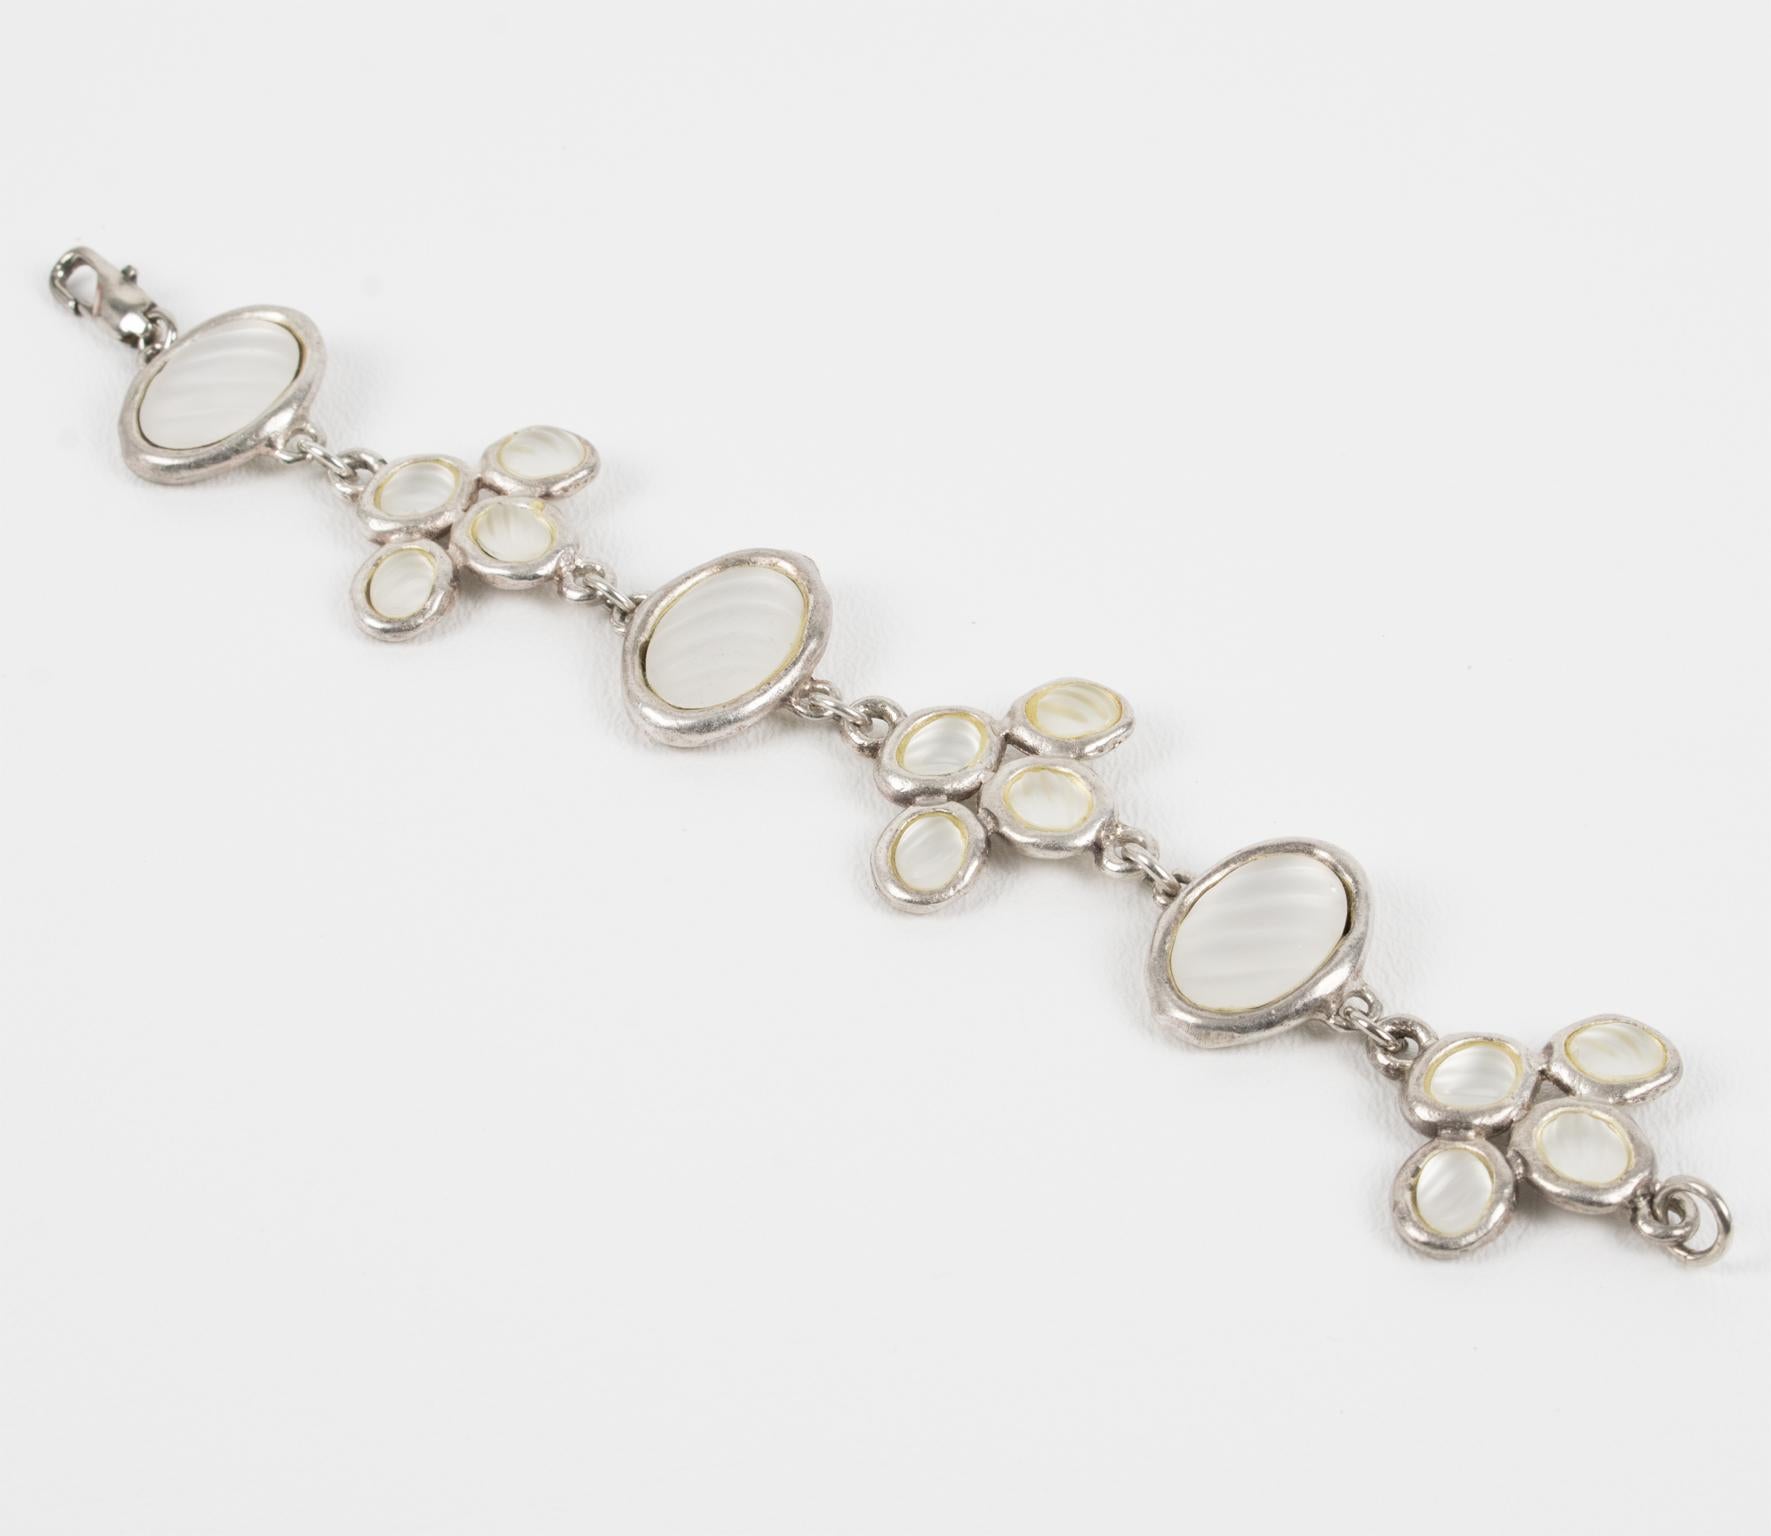 Madame Gres Paris a conçu ce magnifique bracelet à maillons dans les années 1980. Elle présente un design géométrique moderniste avec des cadres en métal argenté surmontés de cabochons en verre dépoli opalescent avec des motifs rayés sculptés. Le